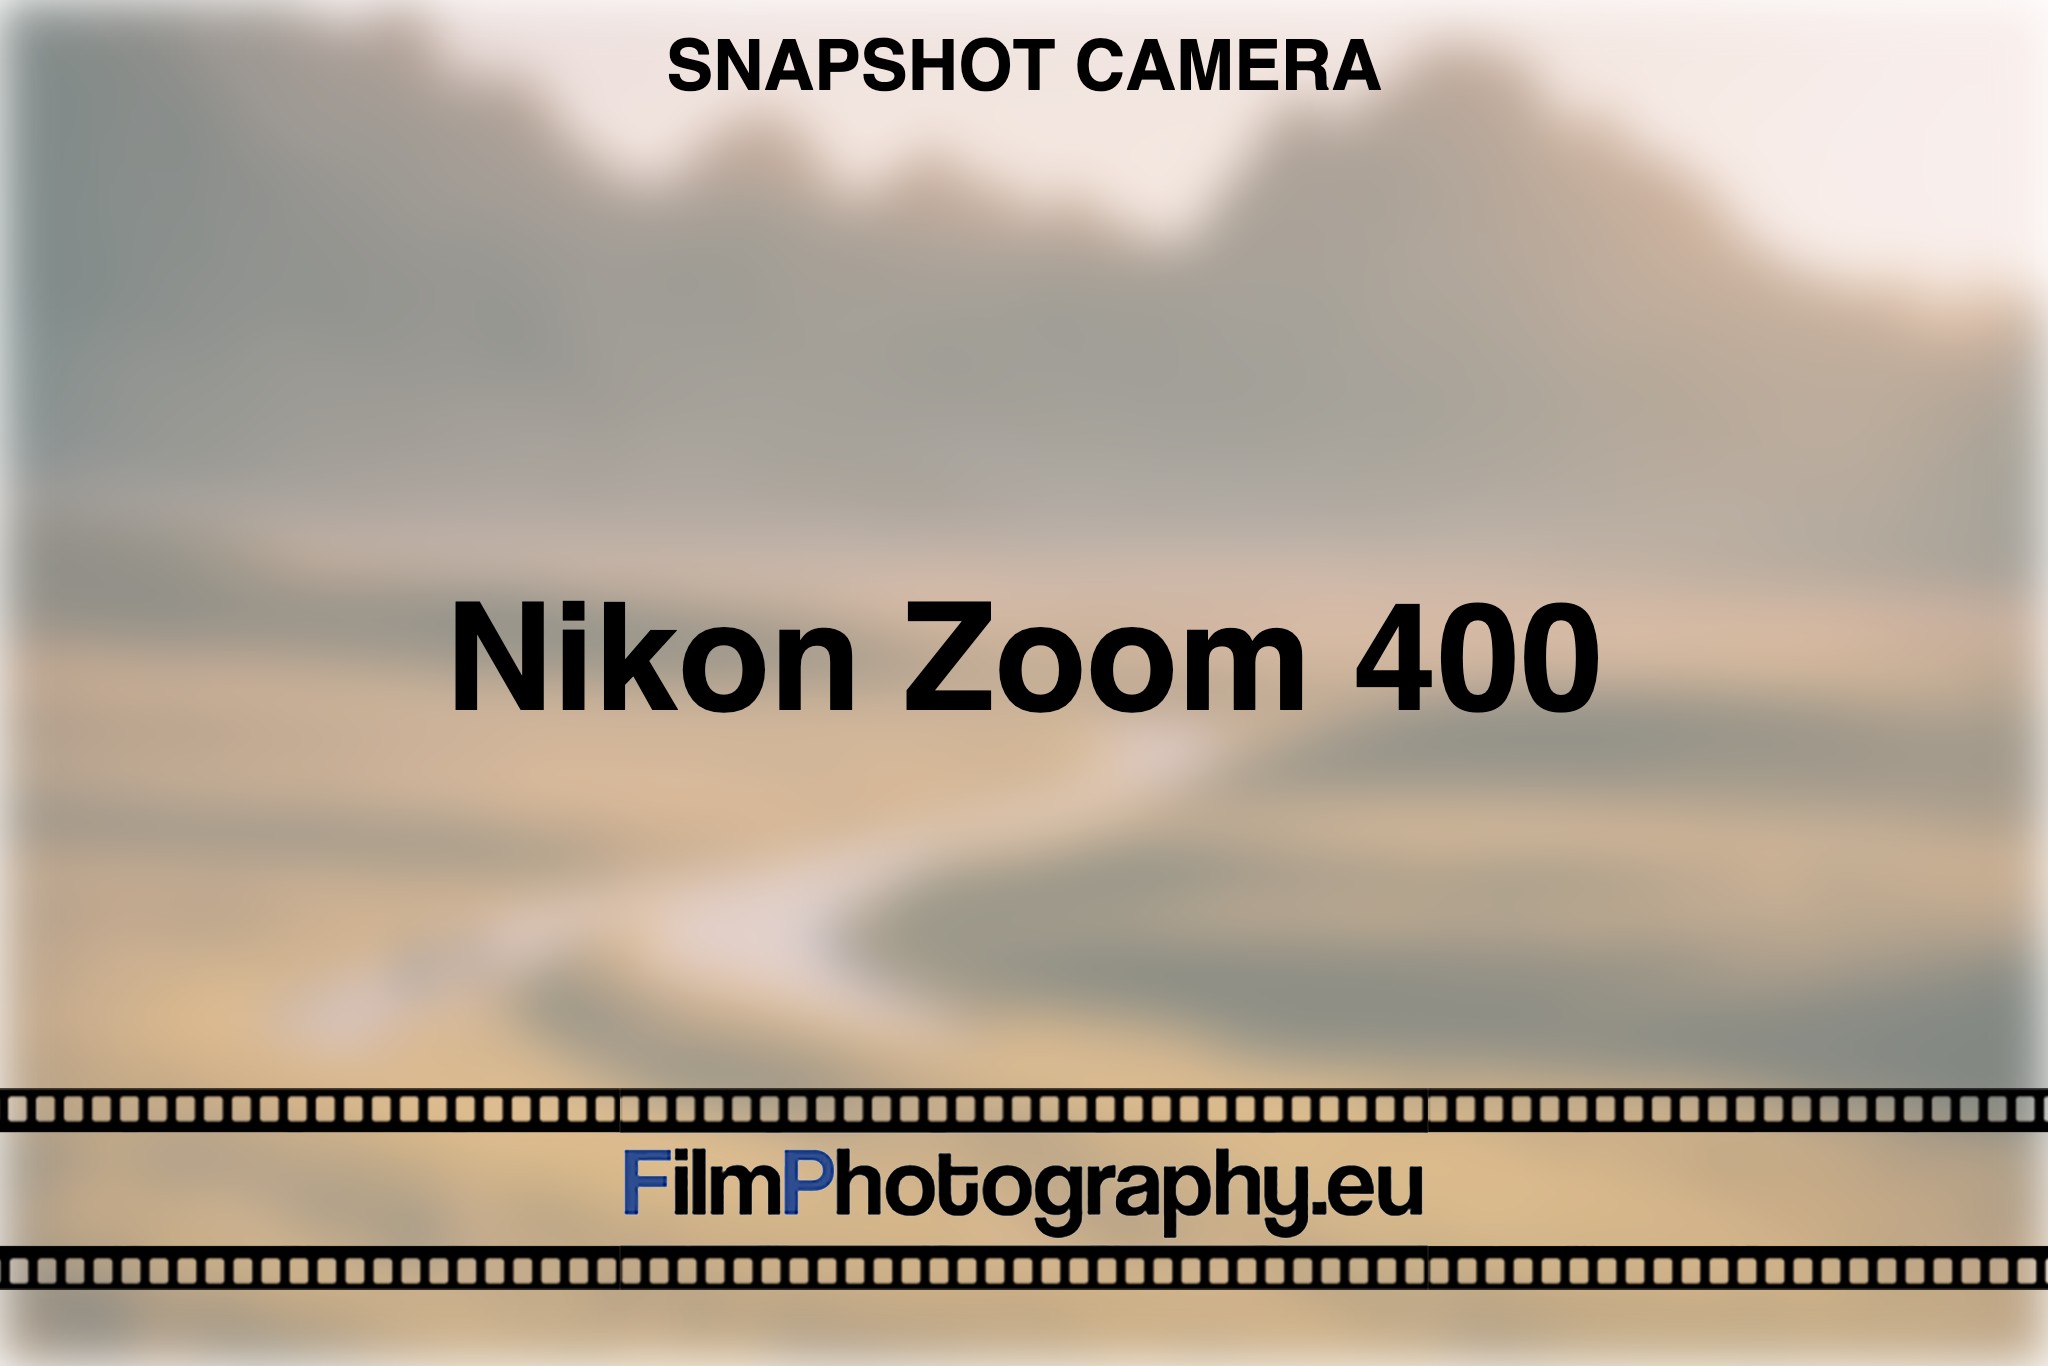 nikon-zoom-400-snapshot-camera-bnv